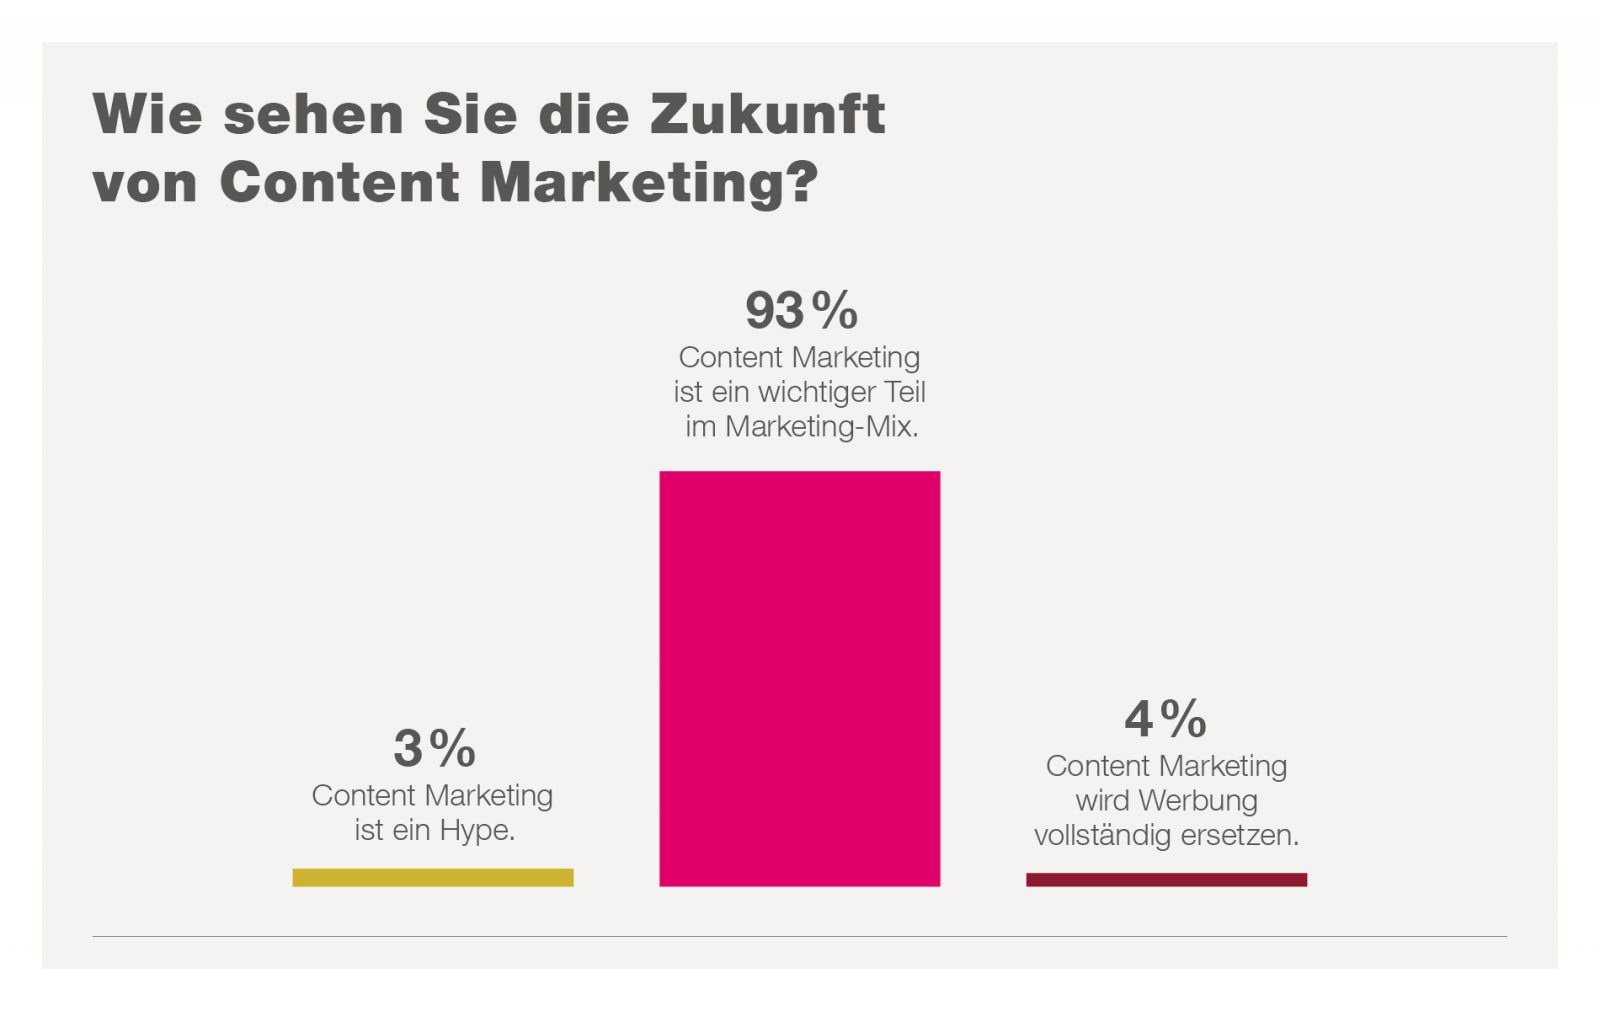 Bedeutung Content Marketing im Marketing-Mix der Zukunft; Quelle: <a href="https://www.fischerappelt.de/wp-content/uploads/2018/07/Wie-sehen-Sie-die-Zukunft-von-Content-Marketing-1600x1011.jpg">fischerAppelt</a>